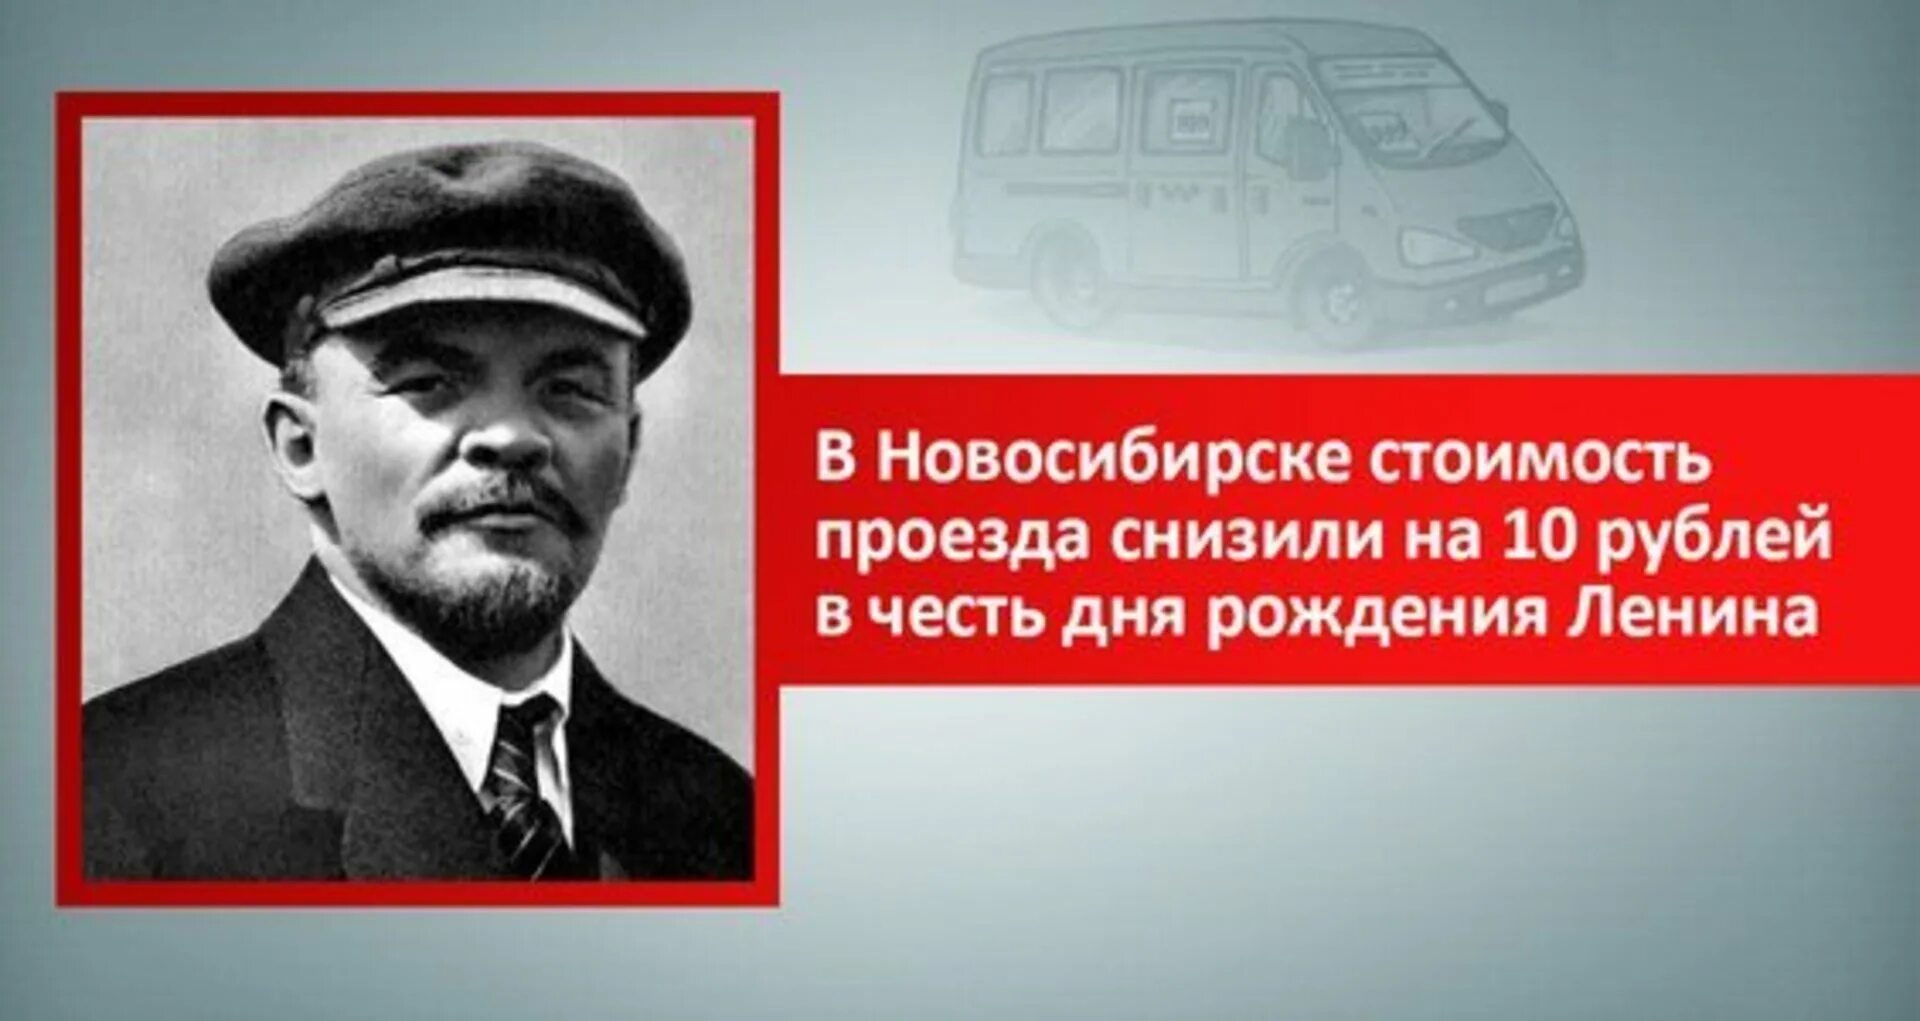 22 апреля день гитлера. 22 Апреля день рождения Ленина. 22 Апреля день рождения Ленина и Гитлера. День рождения Ильича.